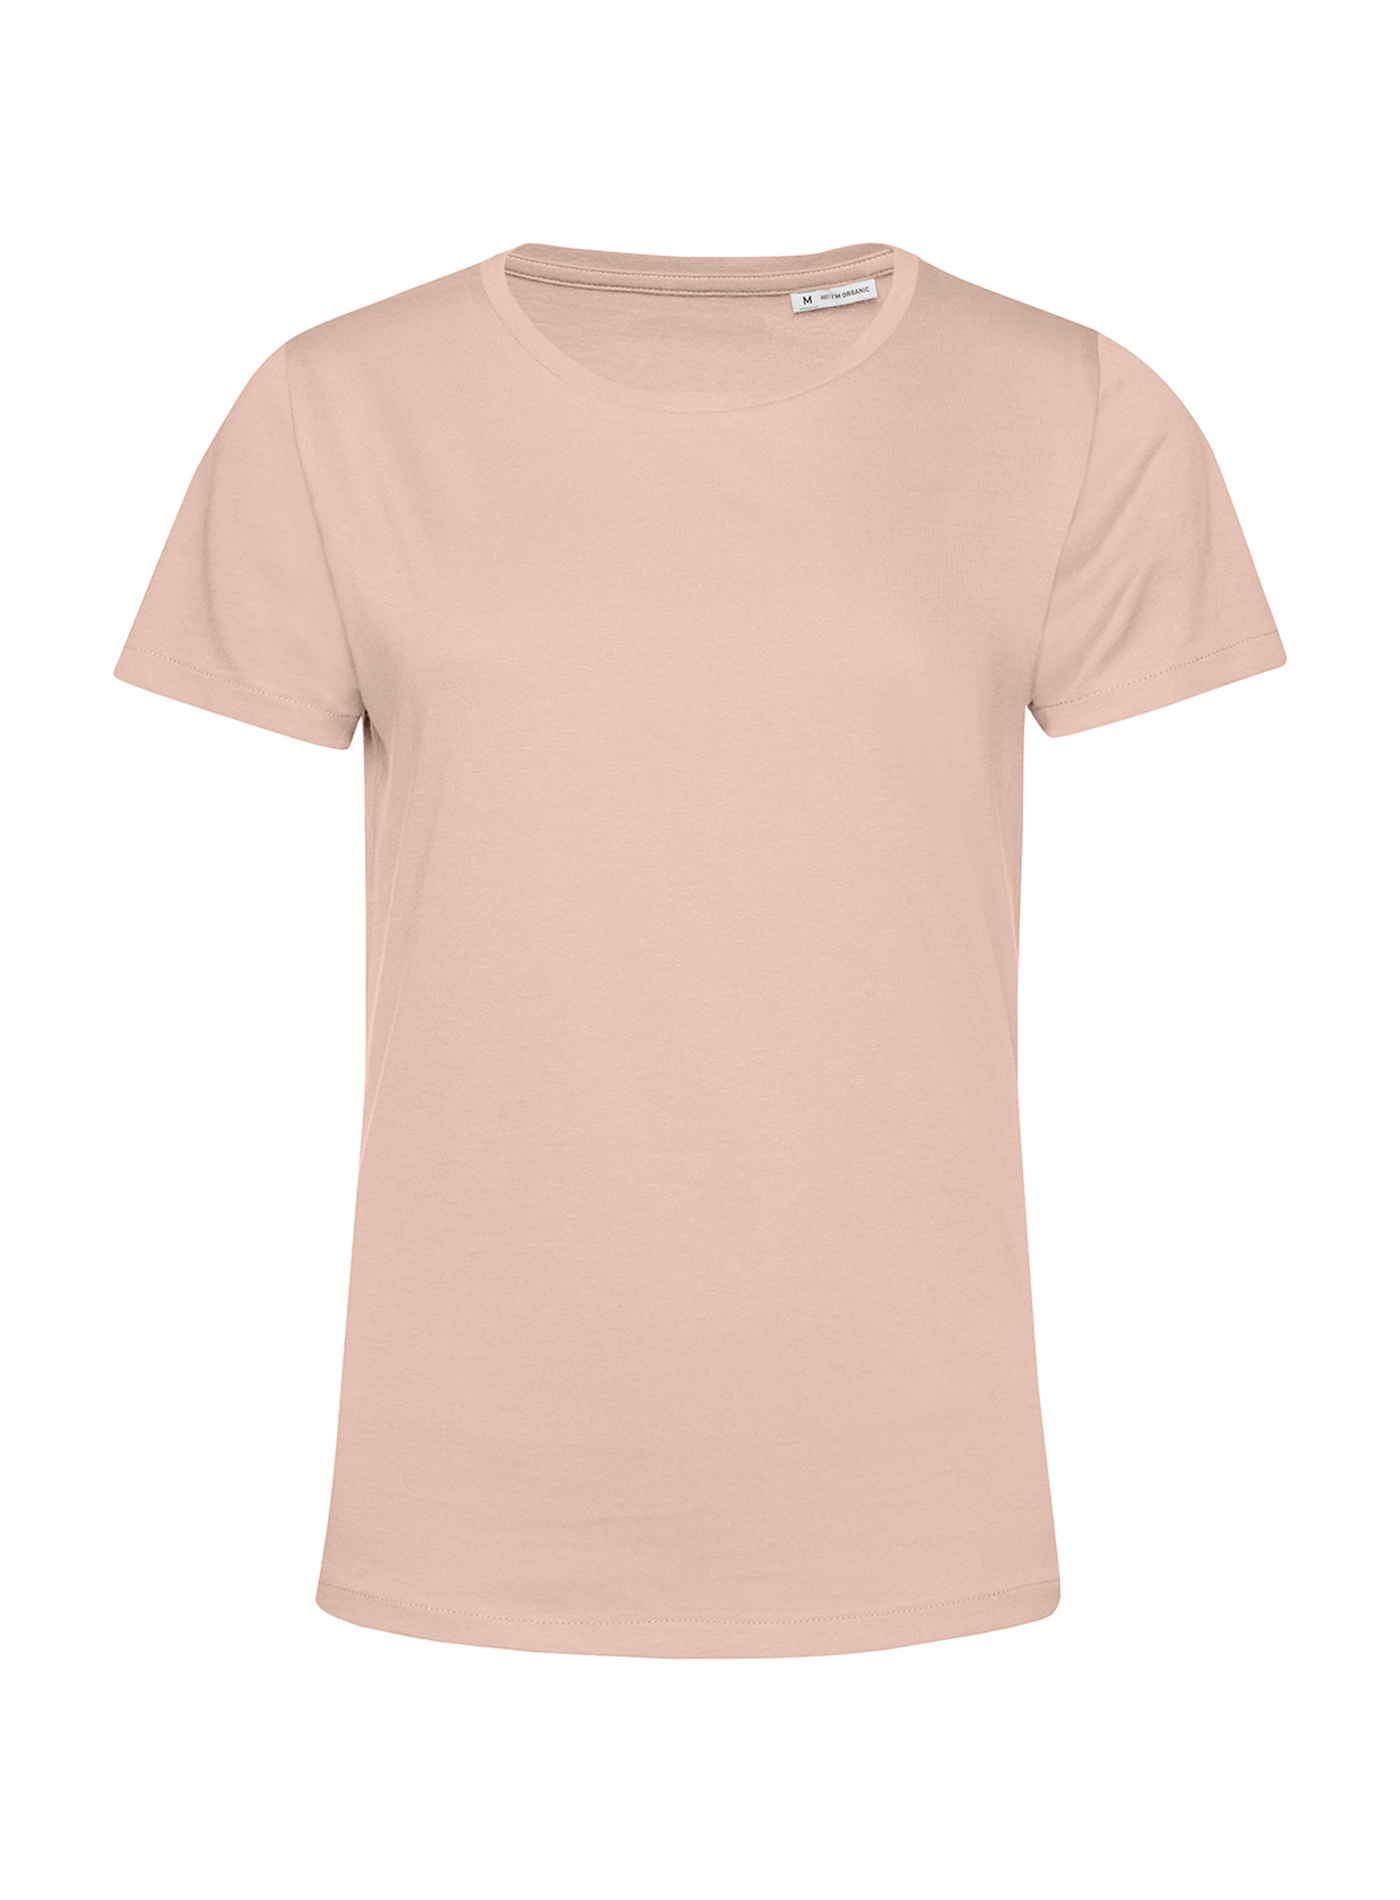 Dámské tričko B&C Collection Organic - Bledě růžová S